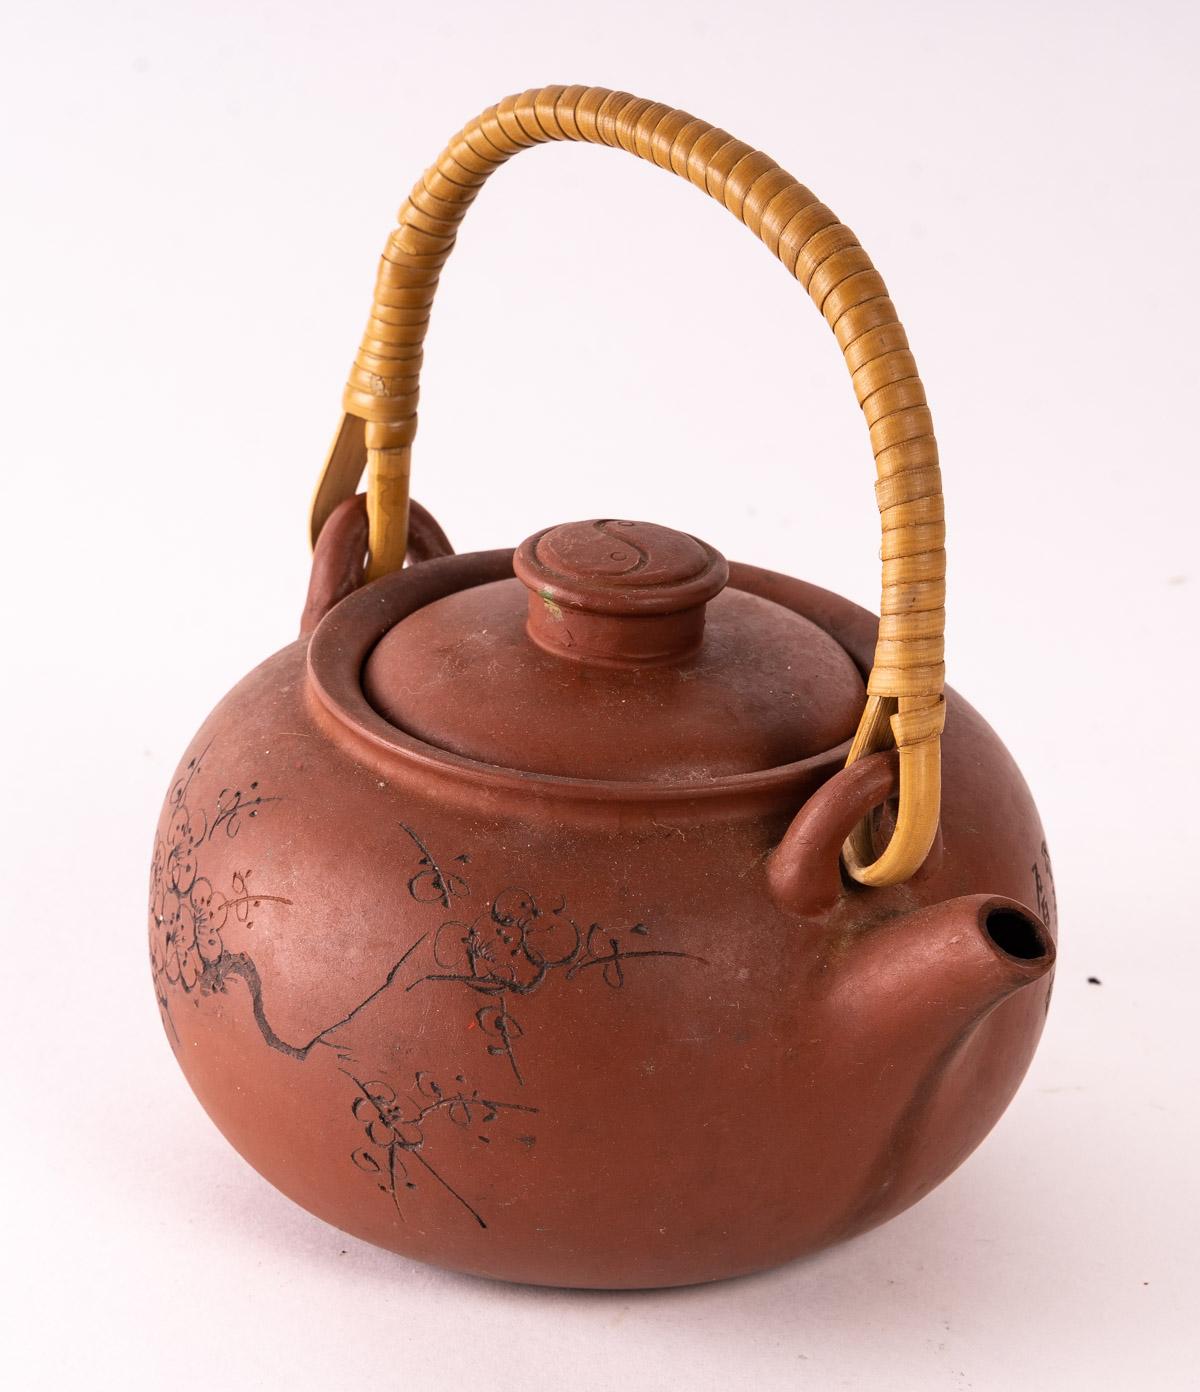 Teapot, terracotta, Asian Art, 20th century
Measures: H: 12cm, W: 19cm, D: 14cm.